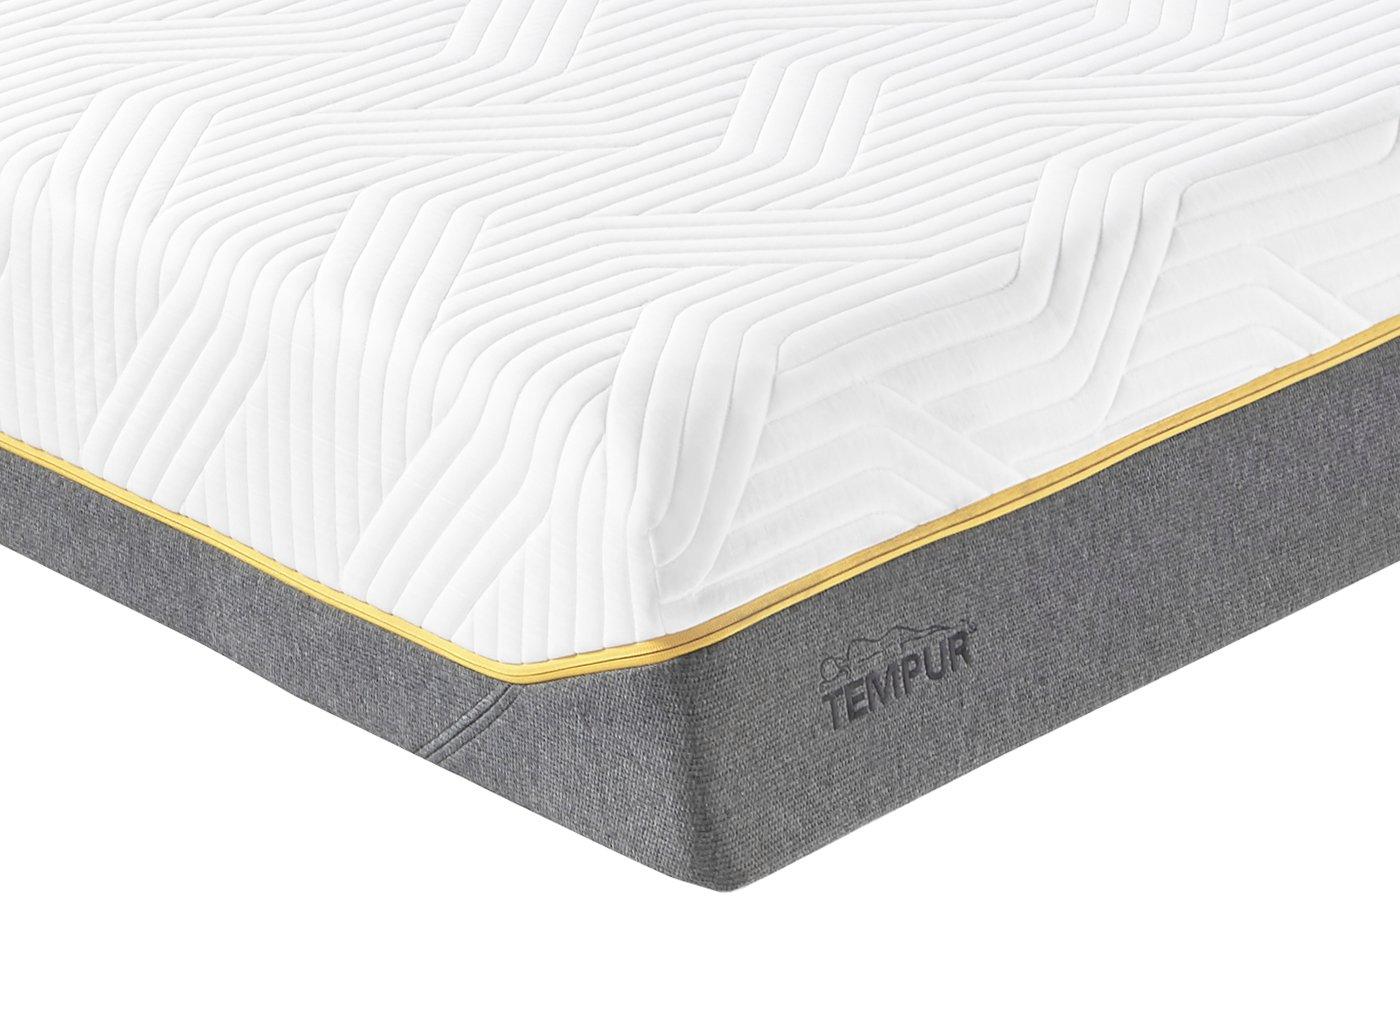 tempur sensation super king mattress